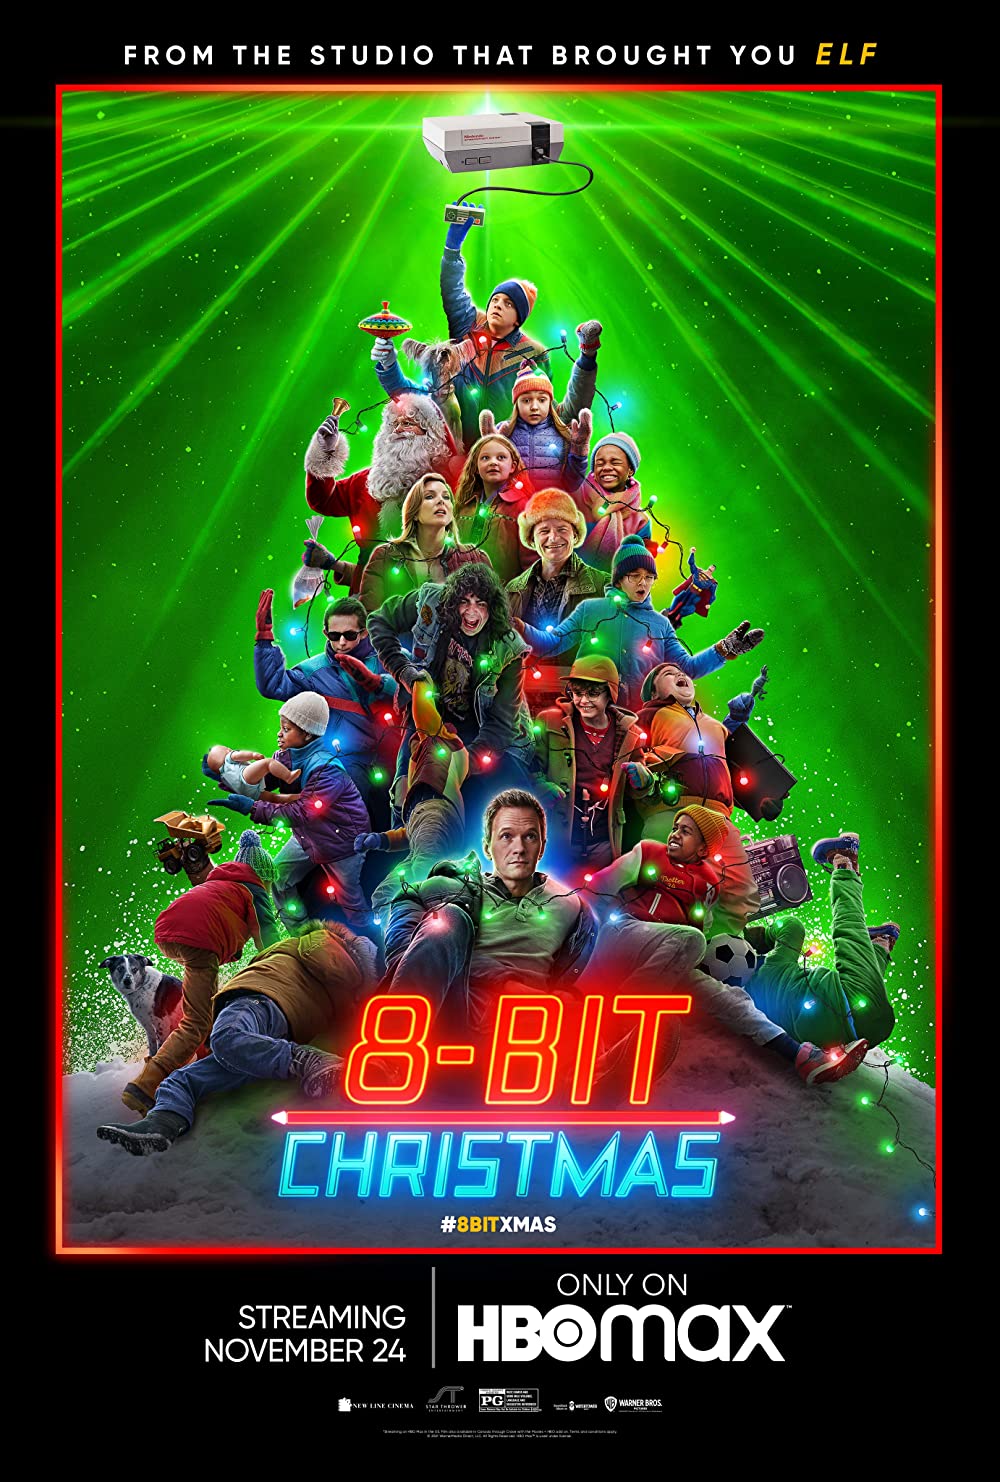 Filmbeschreibung zu 8-Bit Christmas